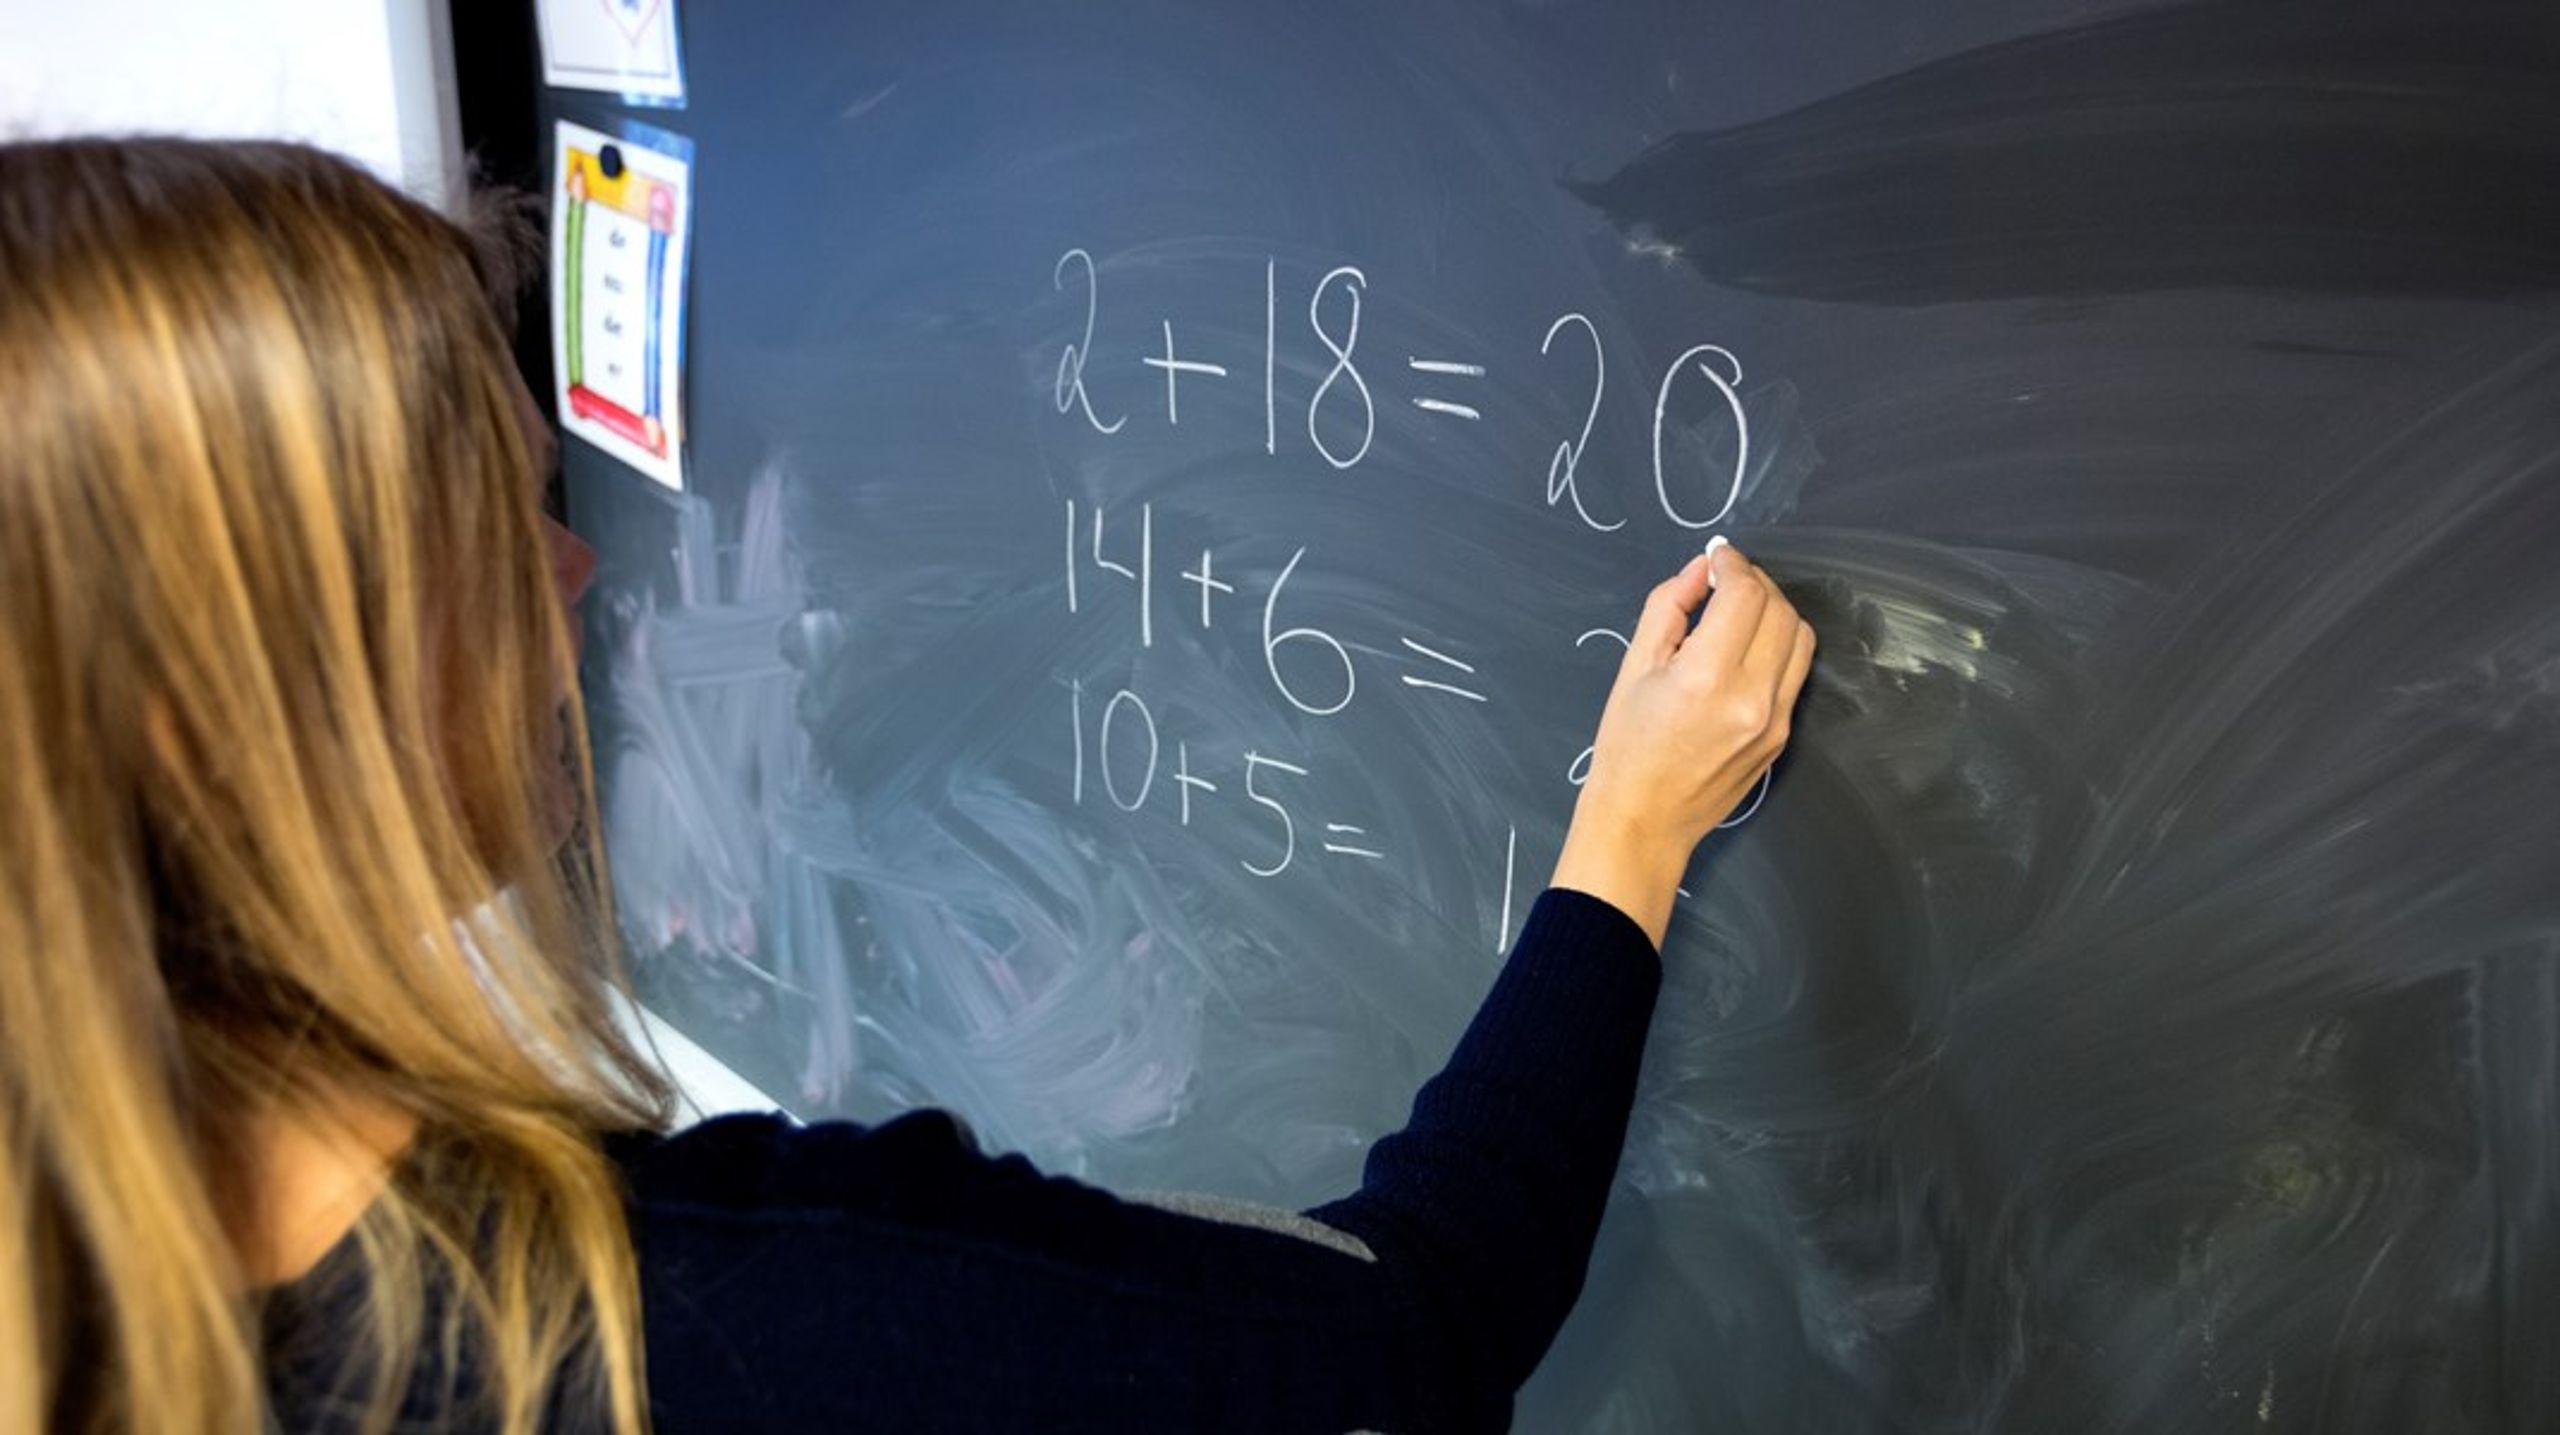 Svenska elevers intresse för naturvetenskap och matematik ligger långt under genomsnittet, skriver debattörerna.